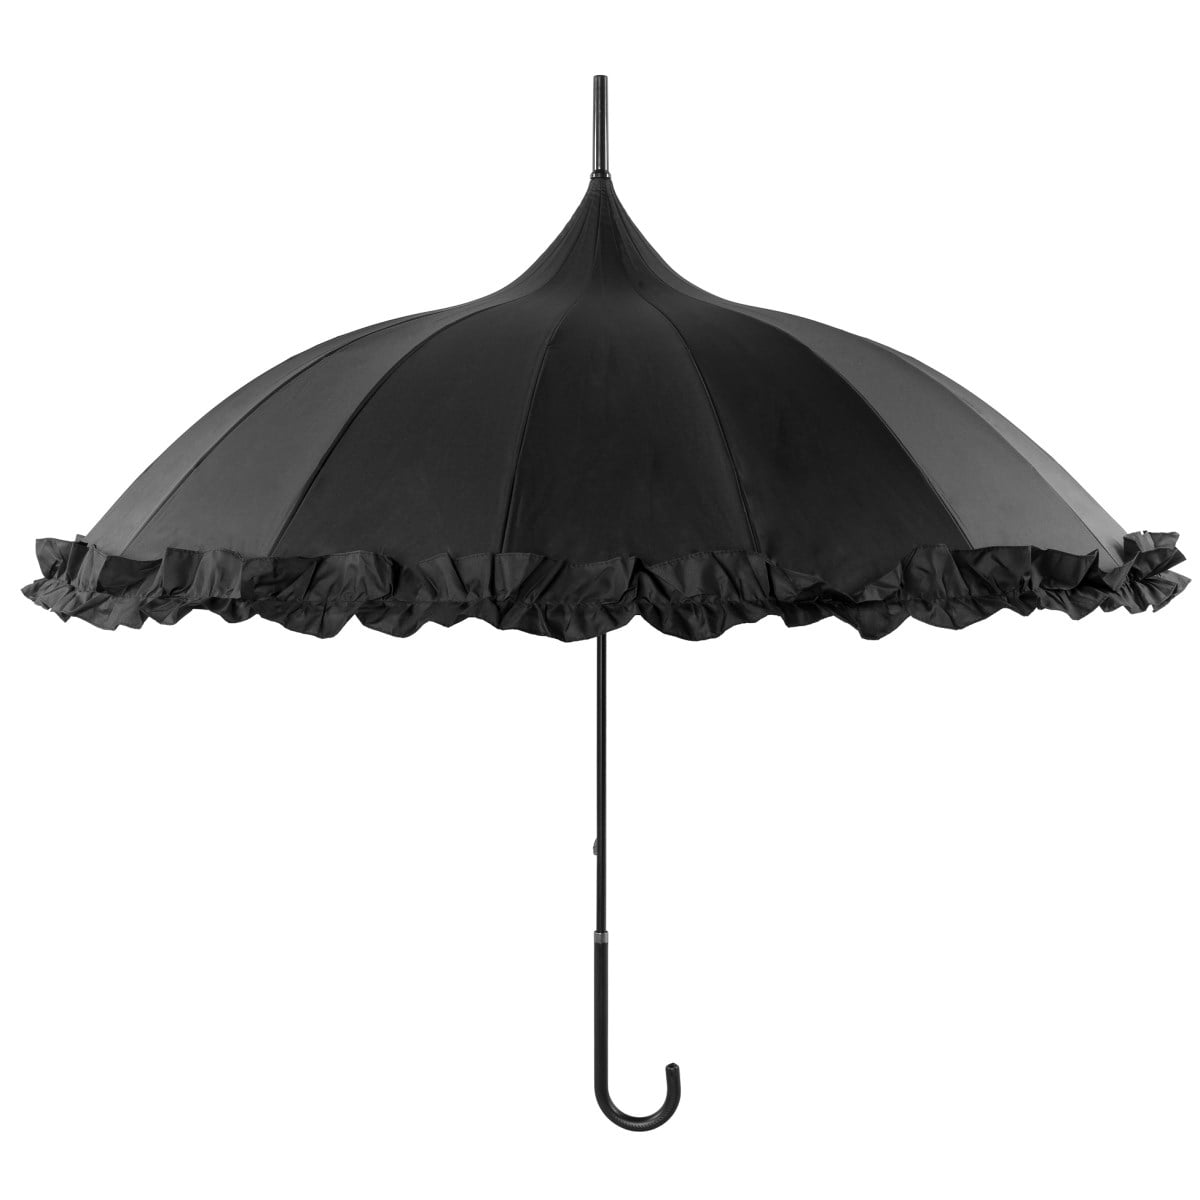 Frilly Black Pagoda Umbrella open, vertical